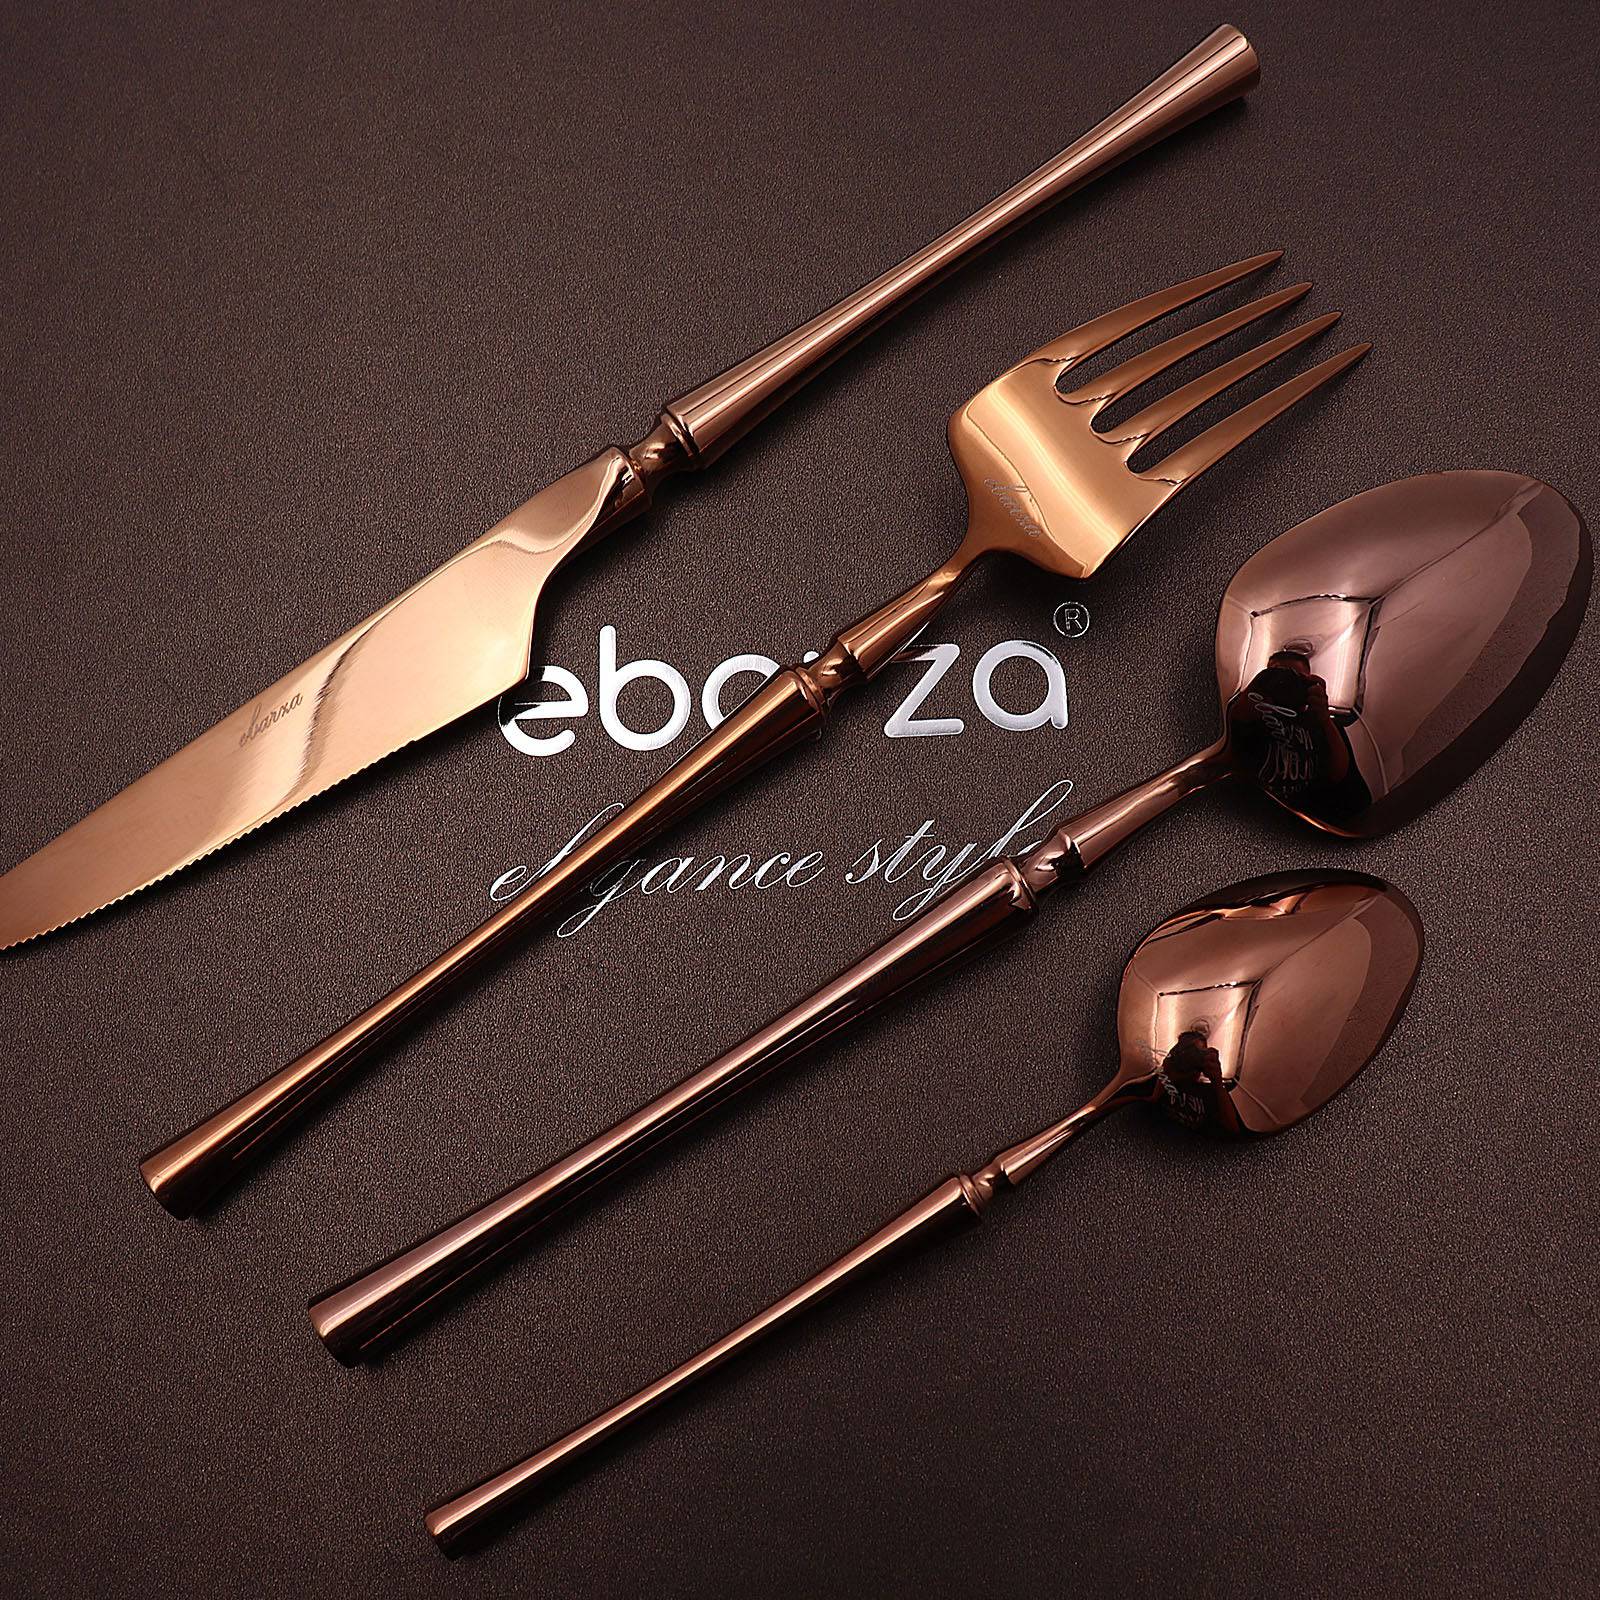 Set Of 24 Pieces Dax Cutlery Set 6013 RG -  Cutlery Sets | طقم أدوات مائدة داكس 24 قطعة - ebarza Furniture UAE | Shop Modern Furniture in Abu Dhabi & Dubai - مفروشات ايبازرا في الامارات | تسوق اثاث عصري وديكورات مميزة في دبي وابوظبي